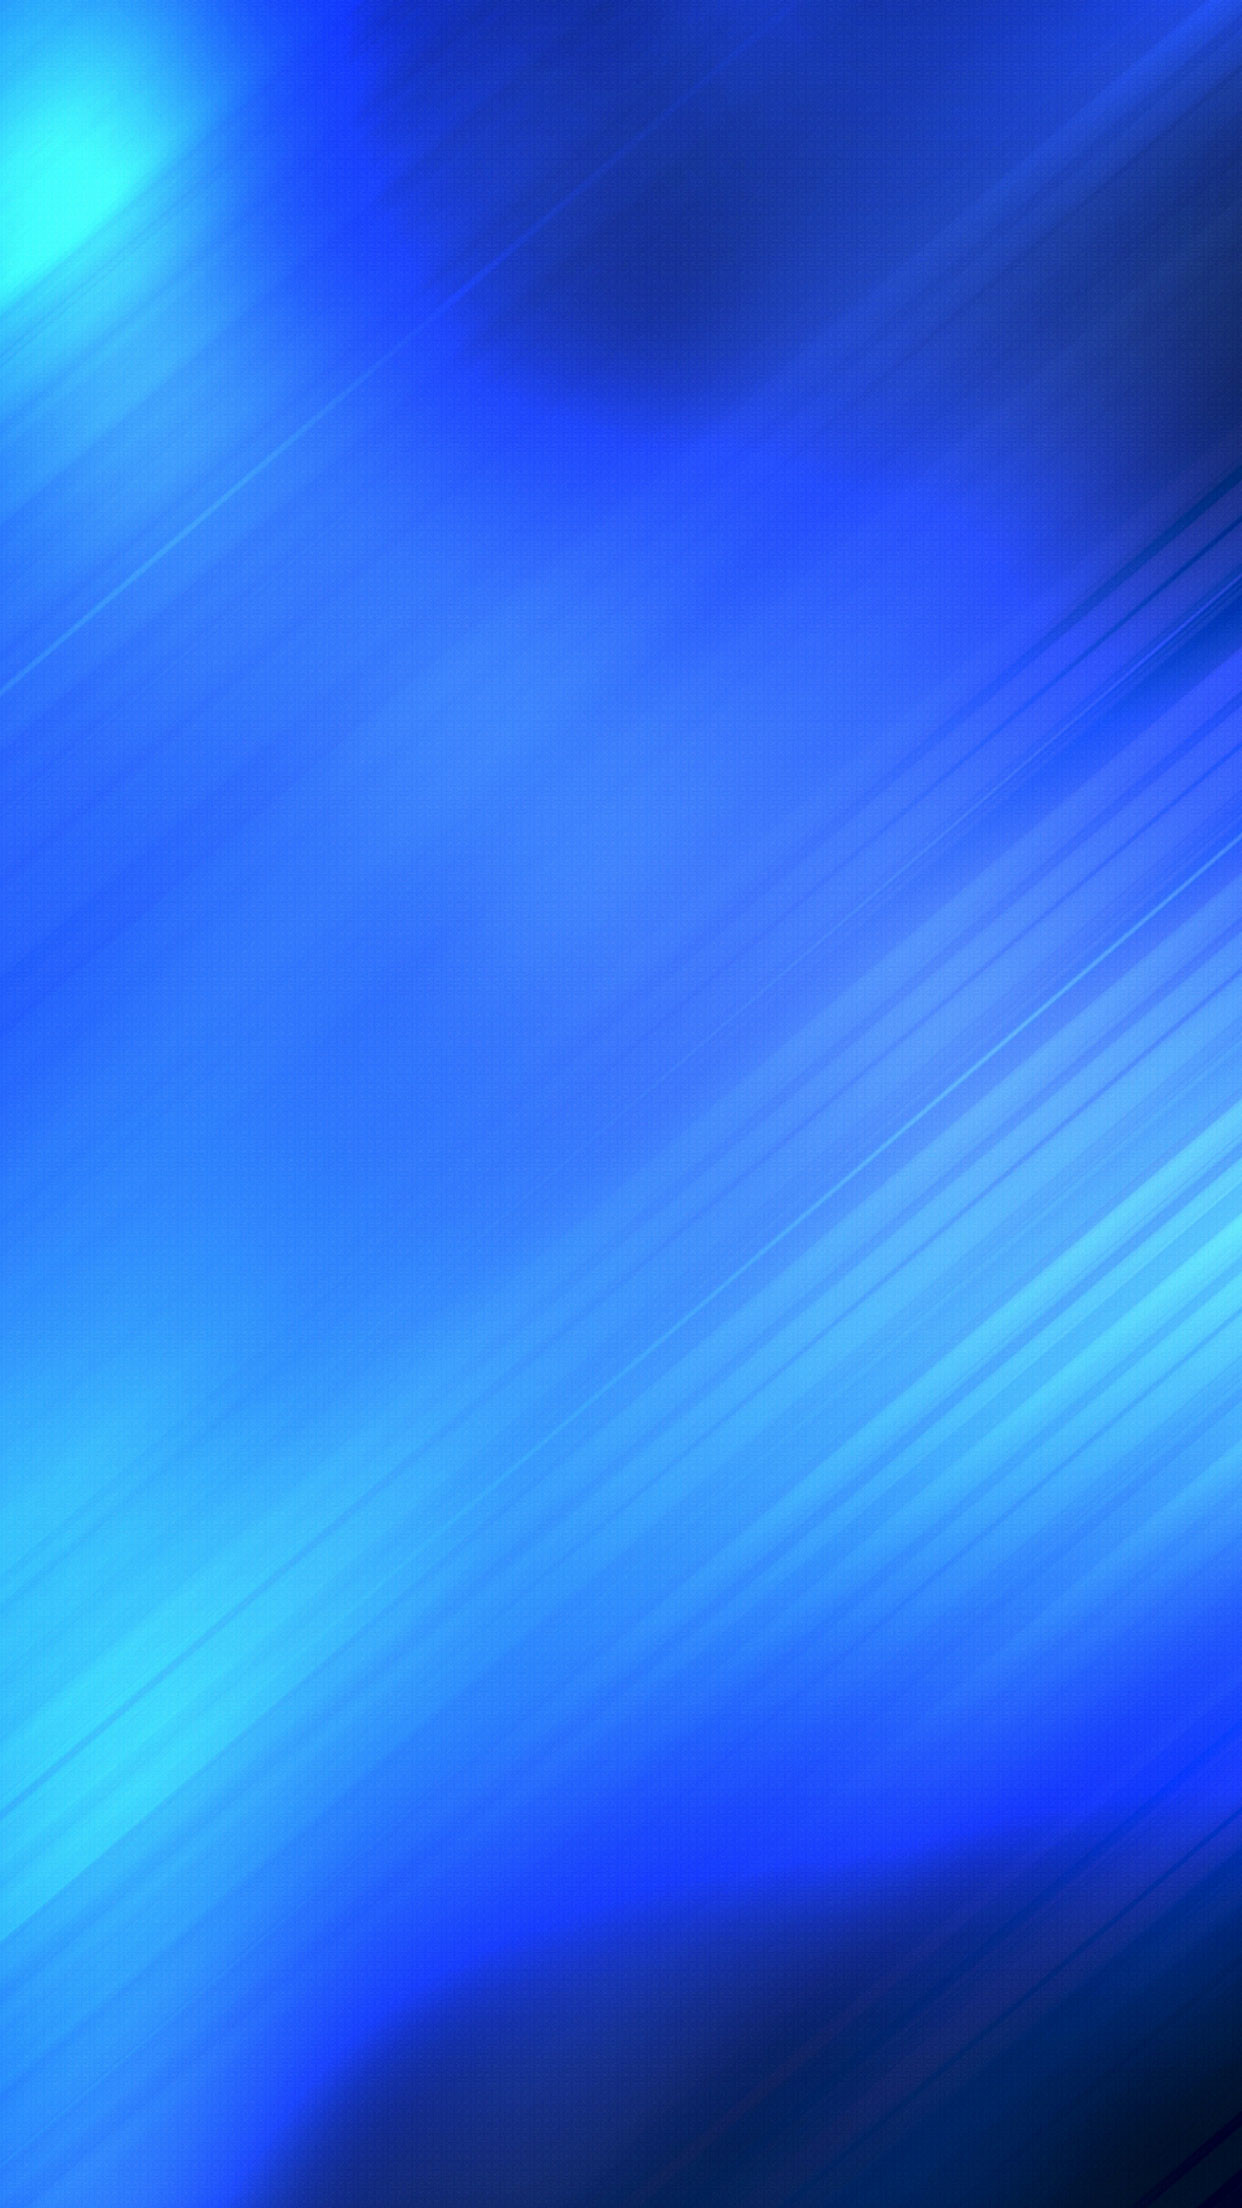 blaue abstrakte tapete,blau,himmel,kobaltblau,elektrisches blau,tagsüber